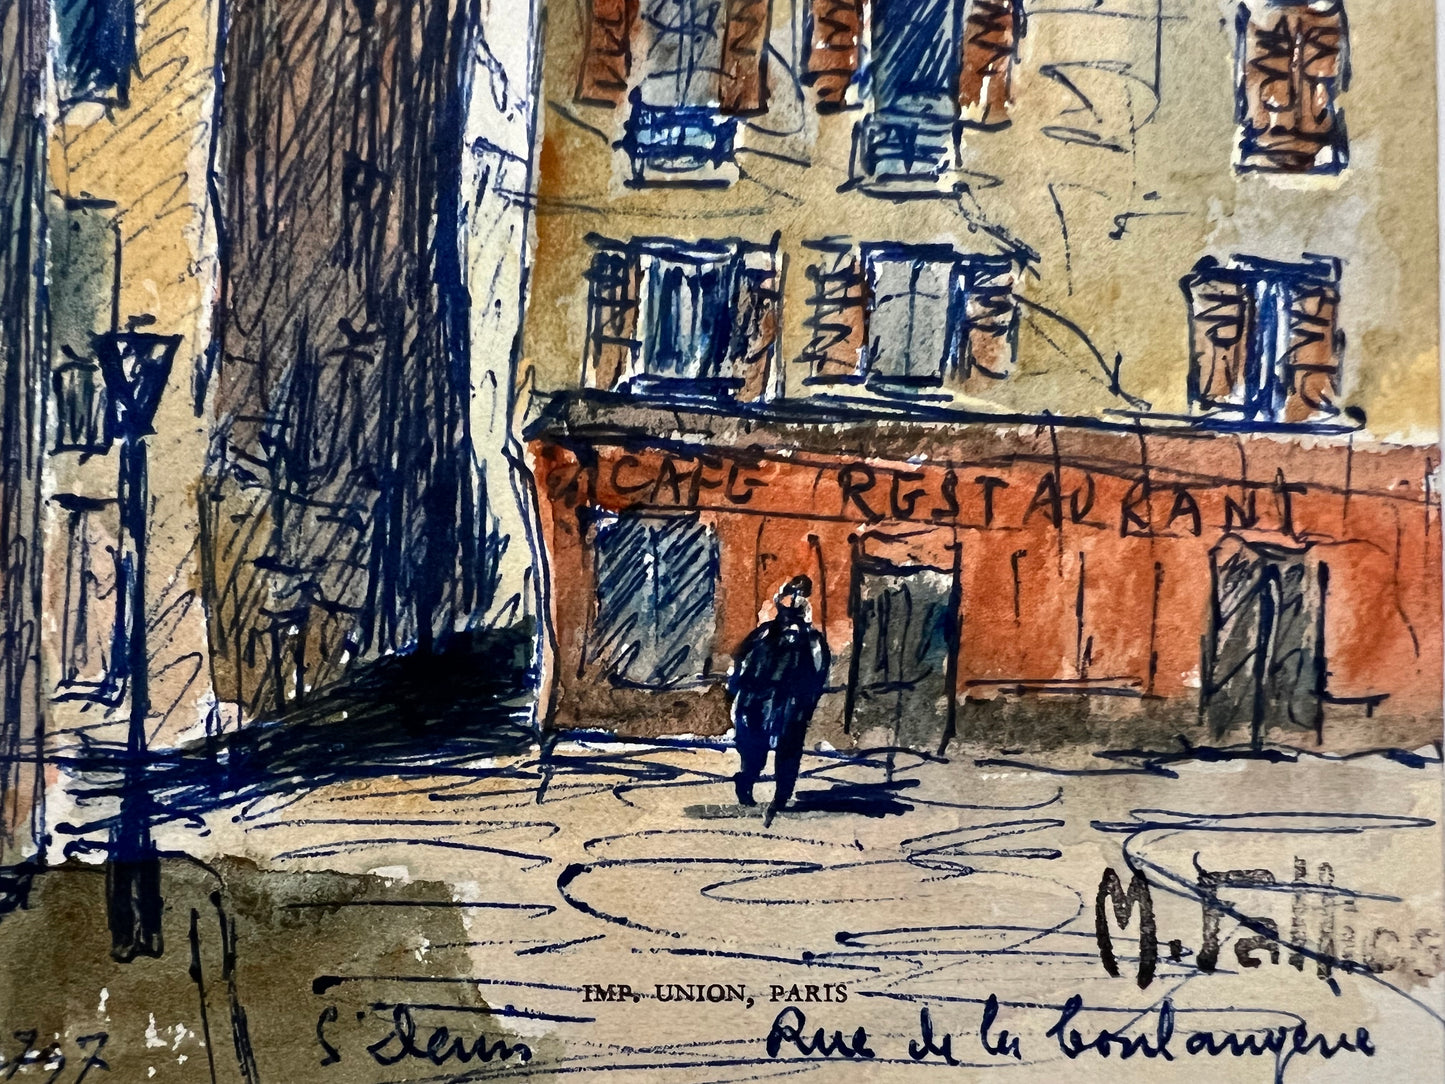 Rue de la Boulangerie (5" x 7.25")